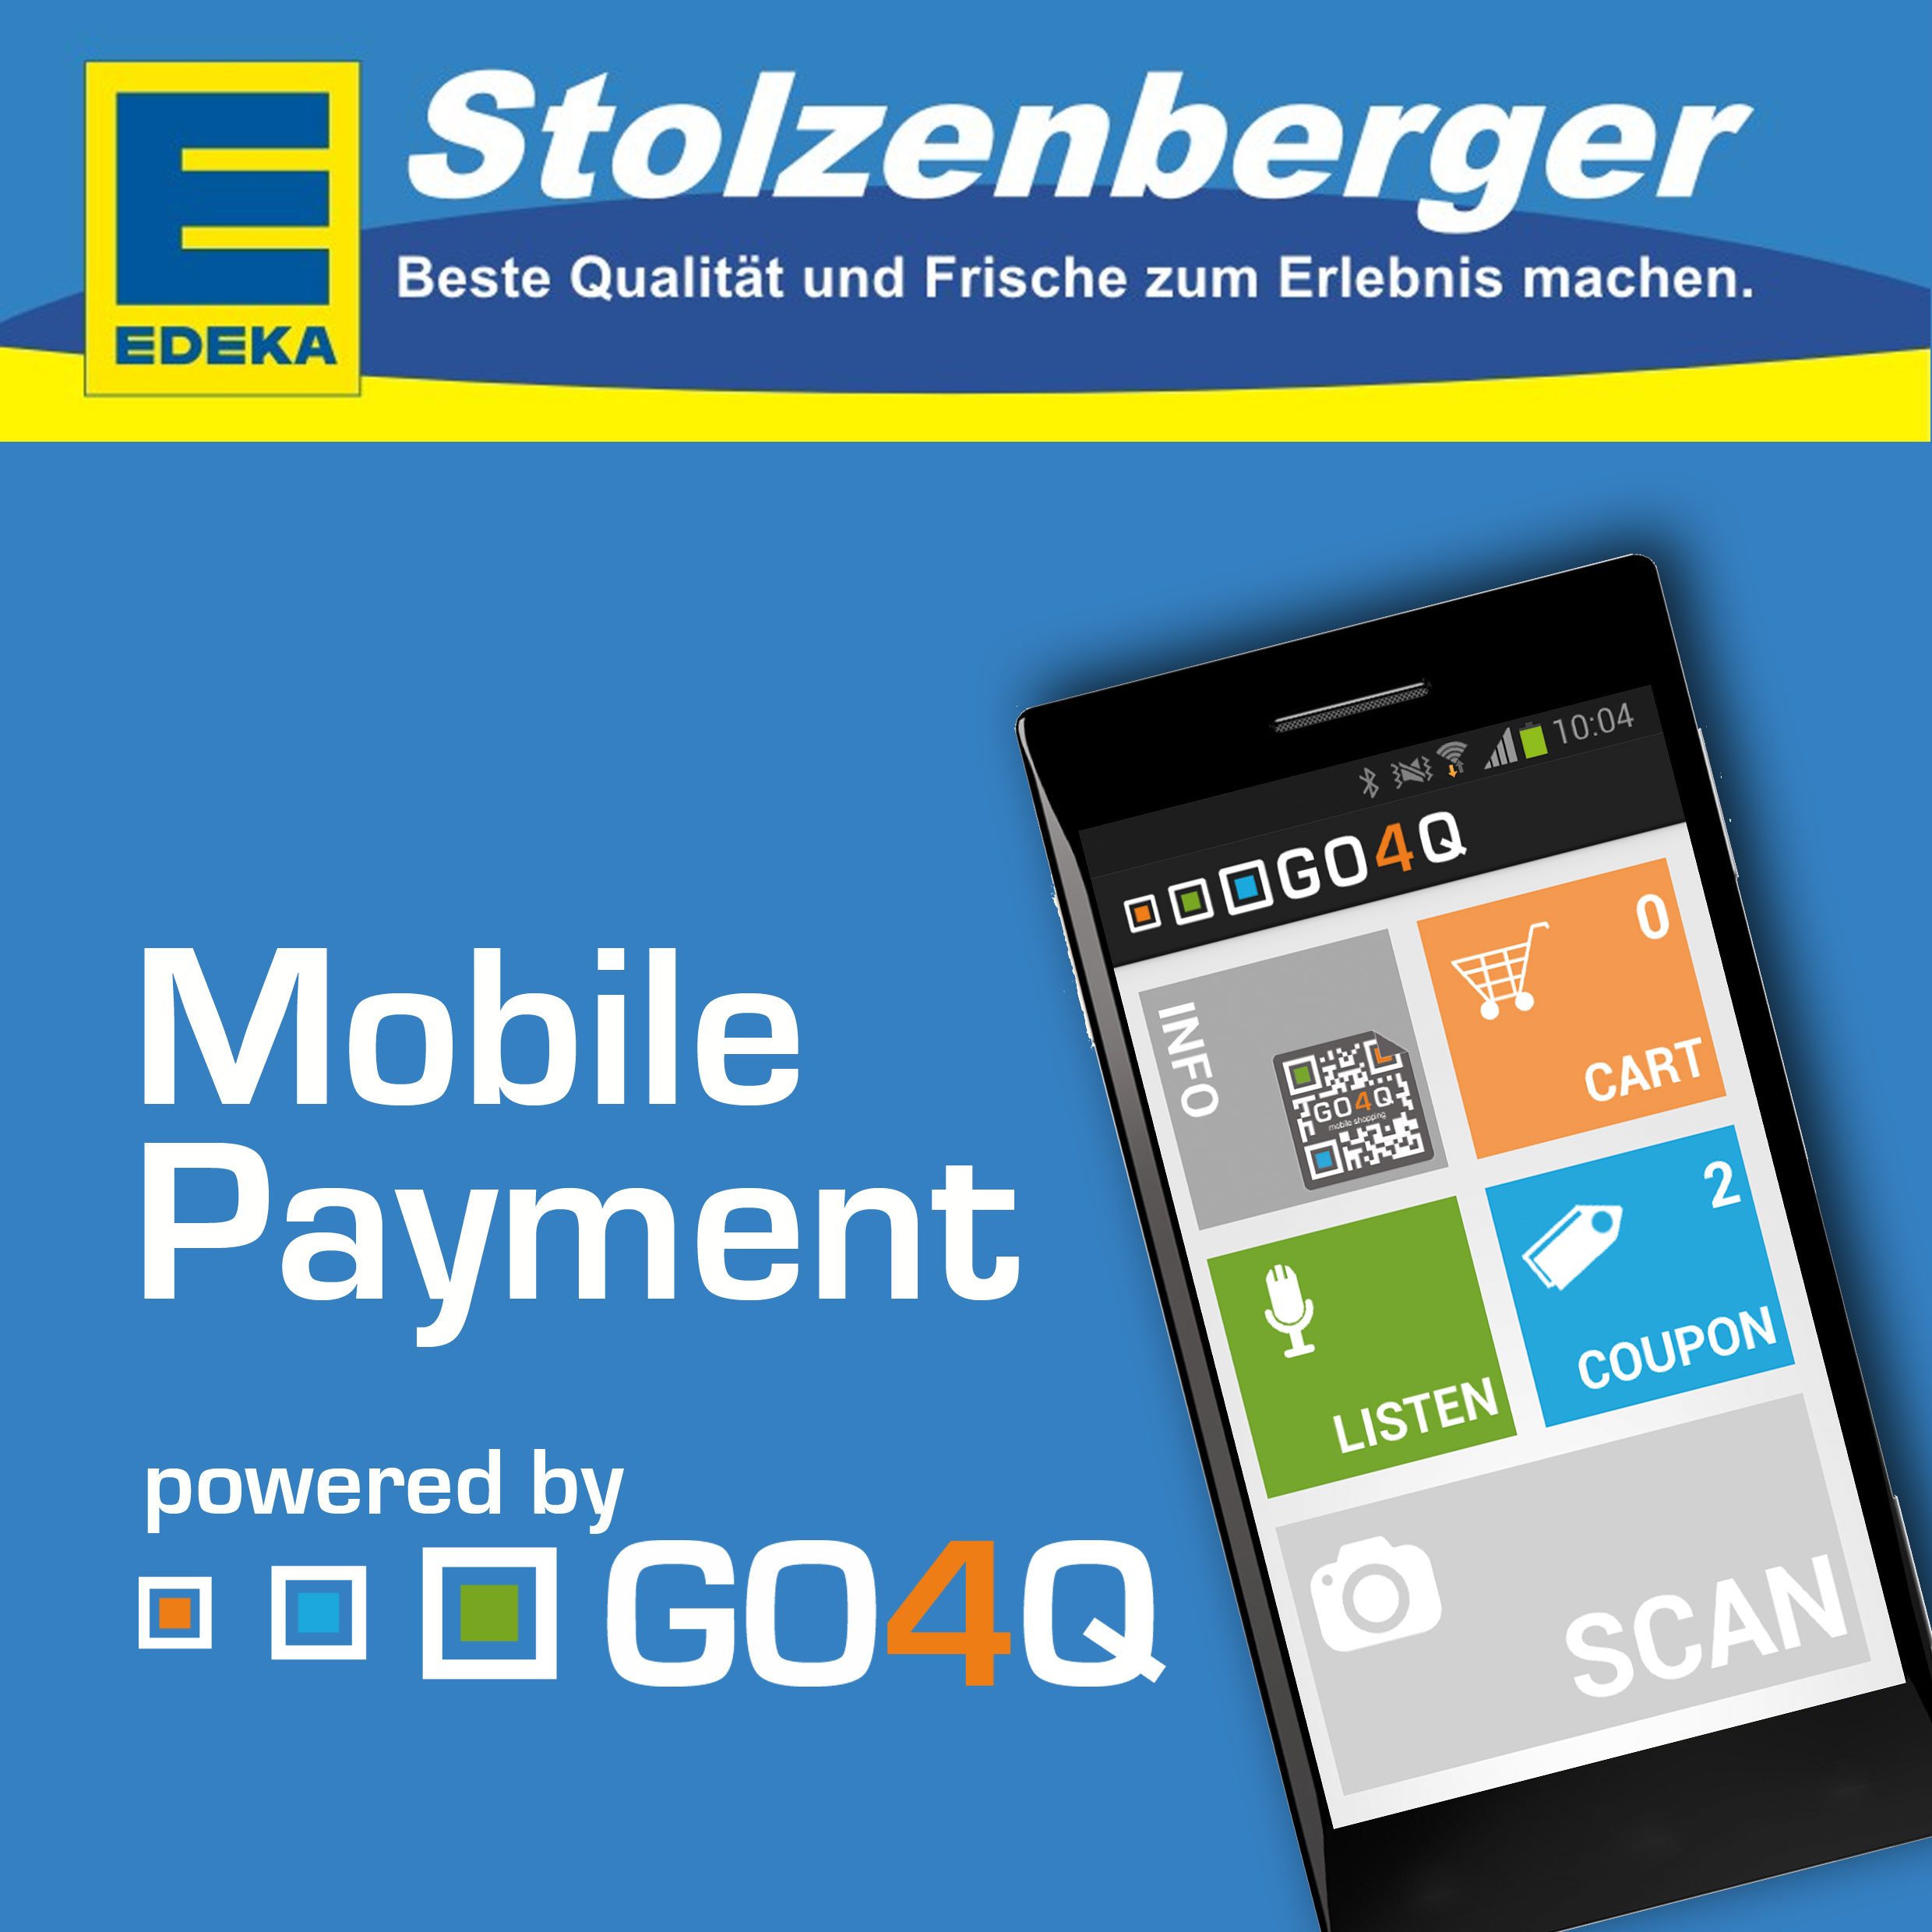 Gutscheine-247.de - Infos & Tipps rund um Gutscheine | Mobile Payment mit GO4Q jetzt auch bei EDEKA Stolzenberger